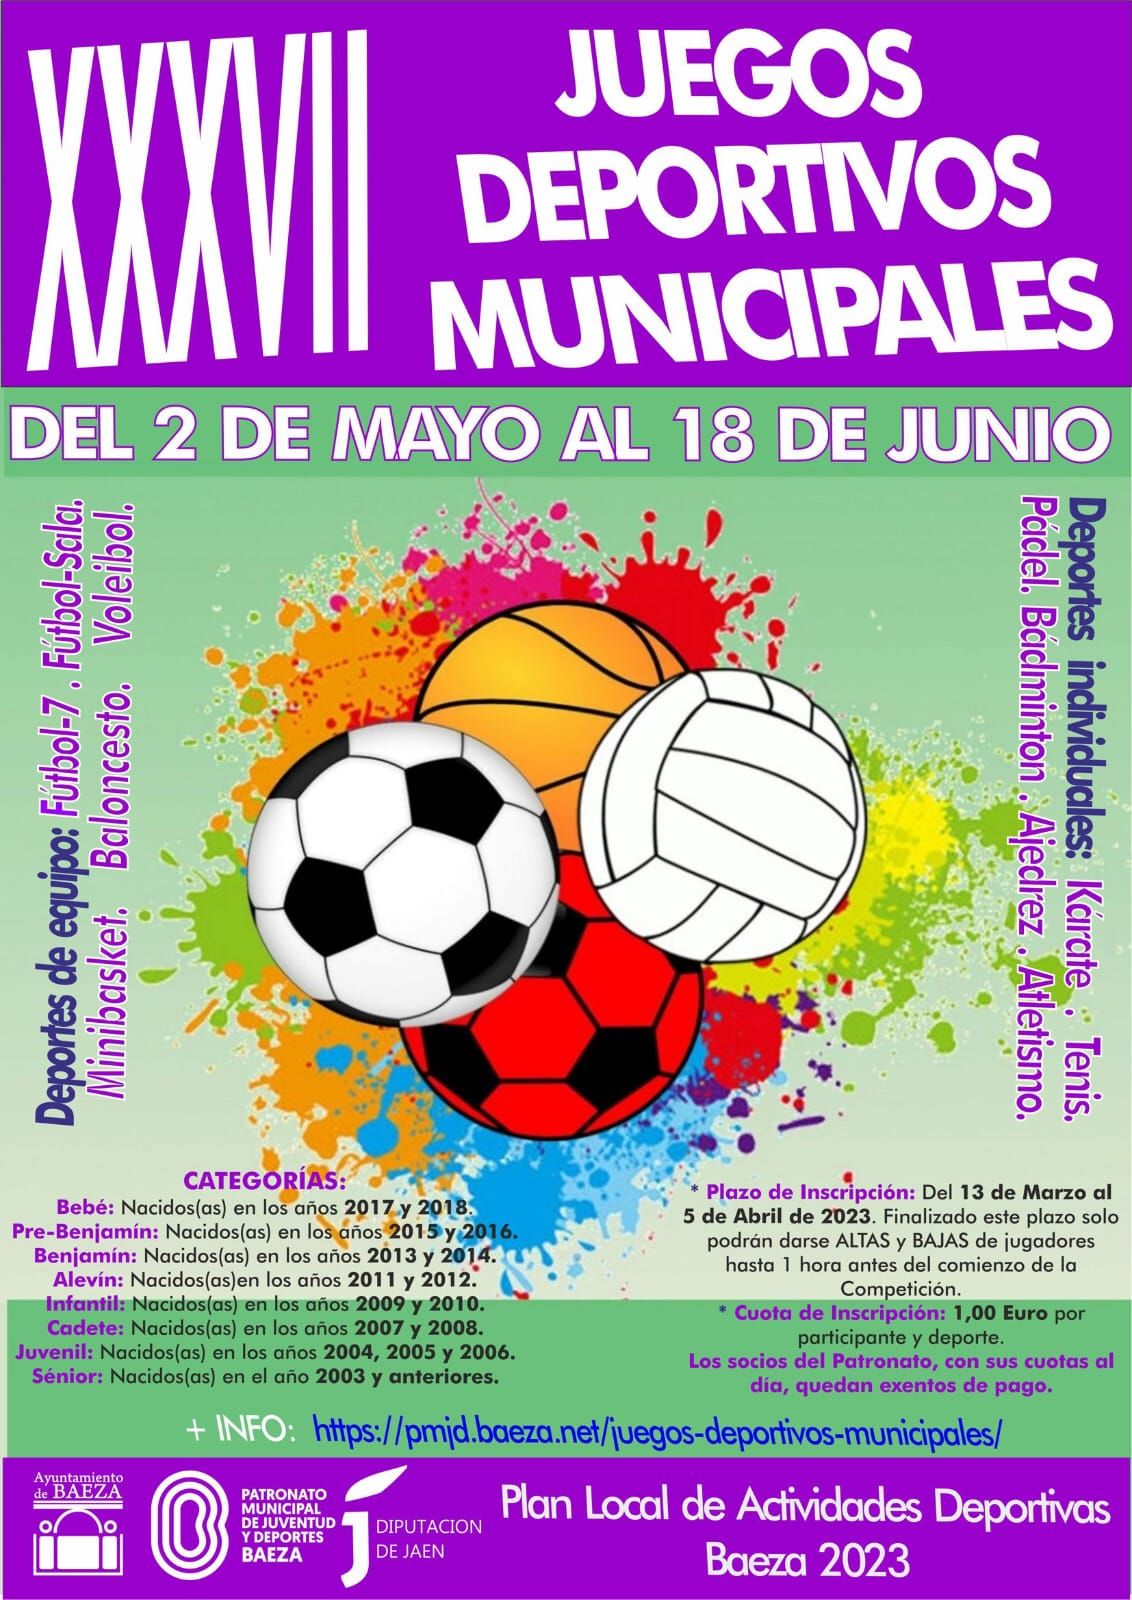 Abierto el plazo de inscripción para la XXXVII edición de los Juegos Deportivos Municipales